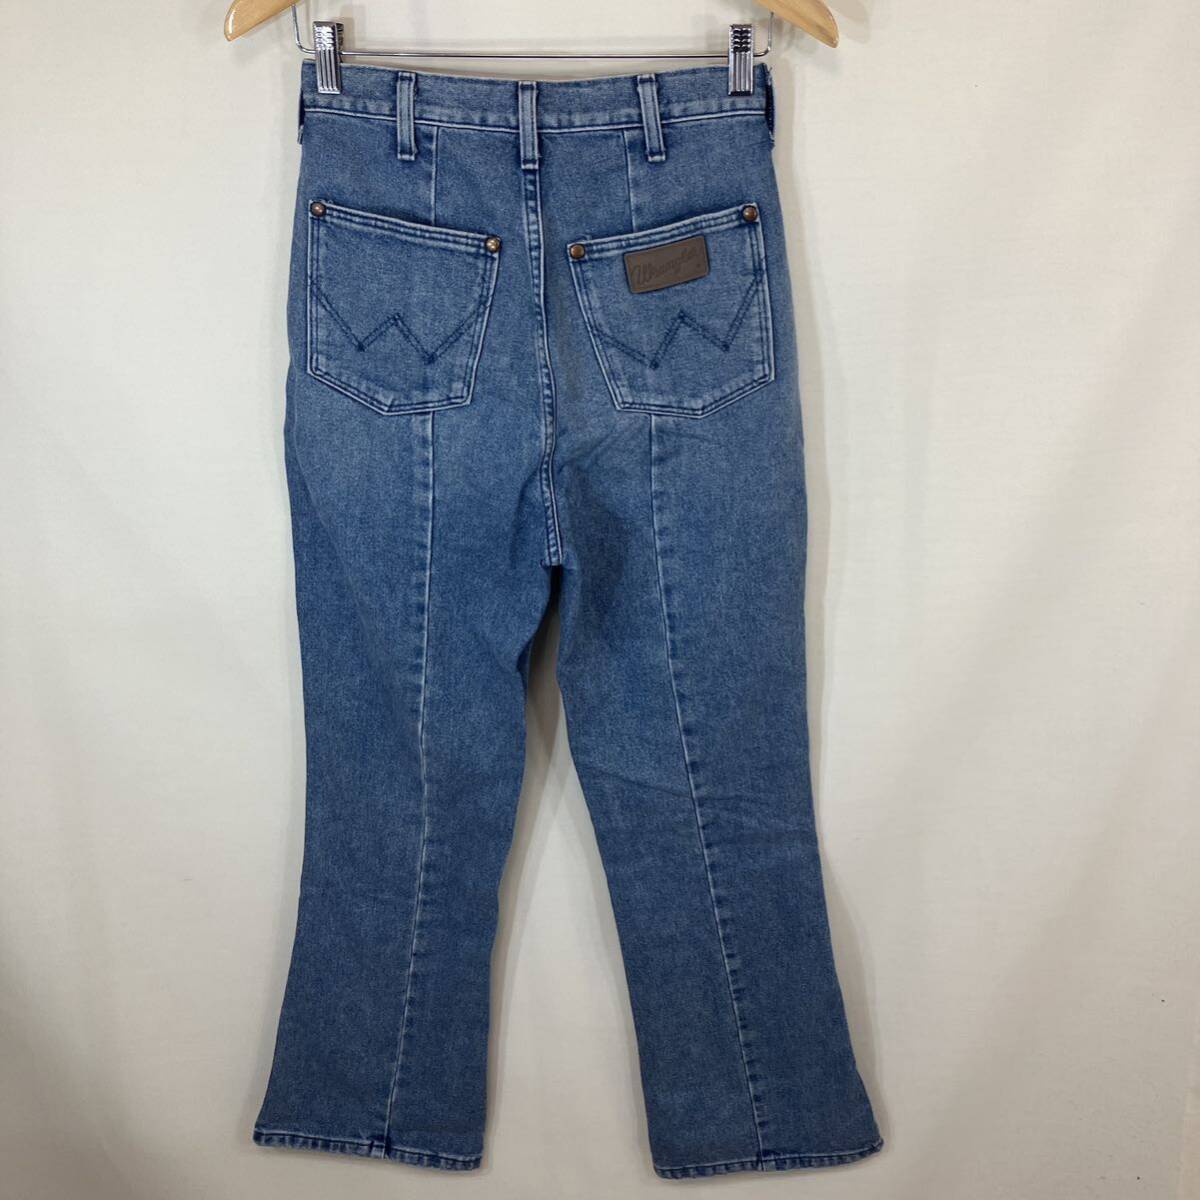 WRANGLER Wrangler ladies женский центральный Press s крышка брюки WL1754 ботинки cut брюки Denim джинсы ji- хлеб size:S